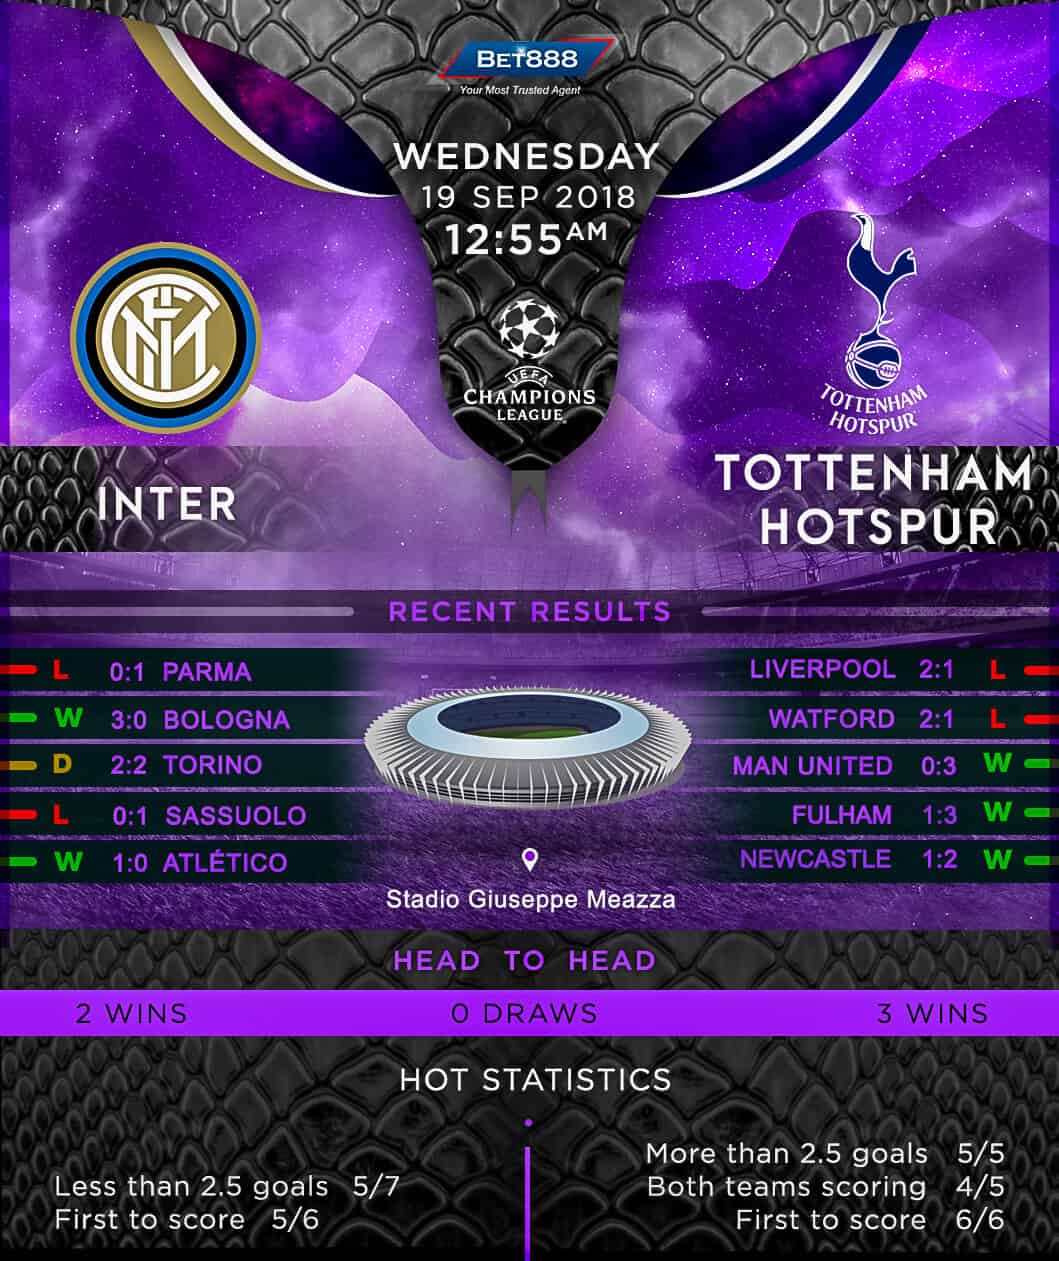 Inter Milan vs Tottenham Hotspur 19/09/18